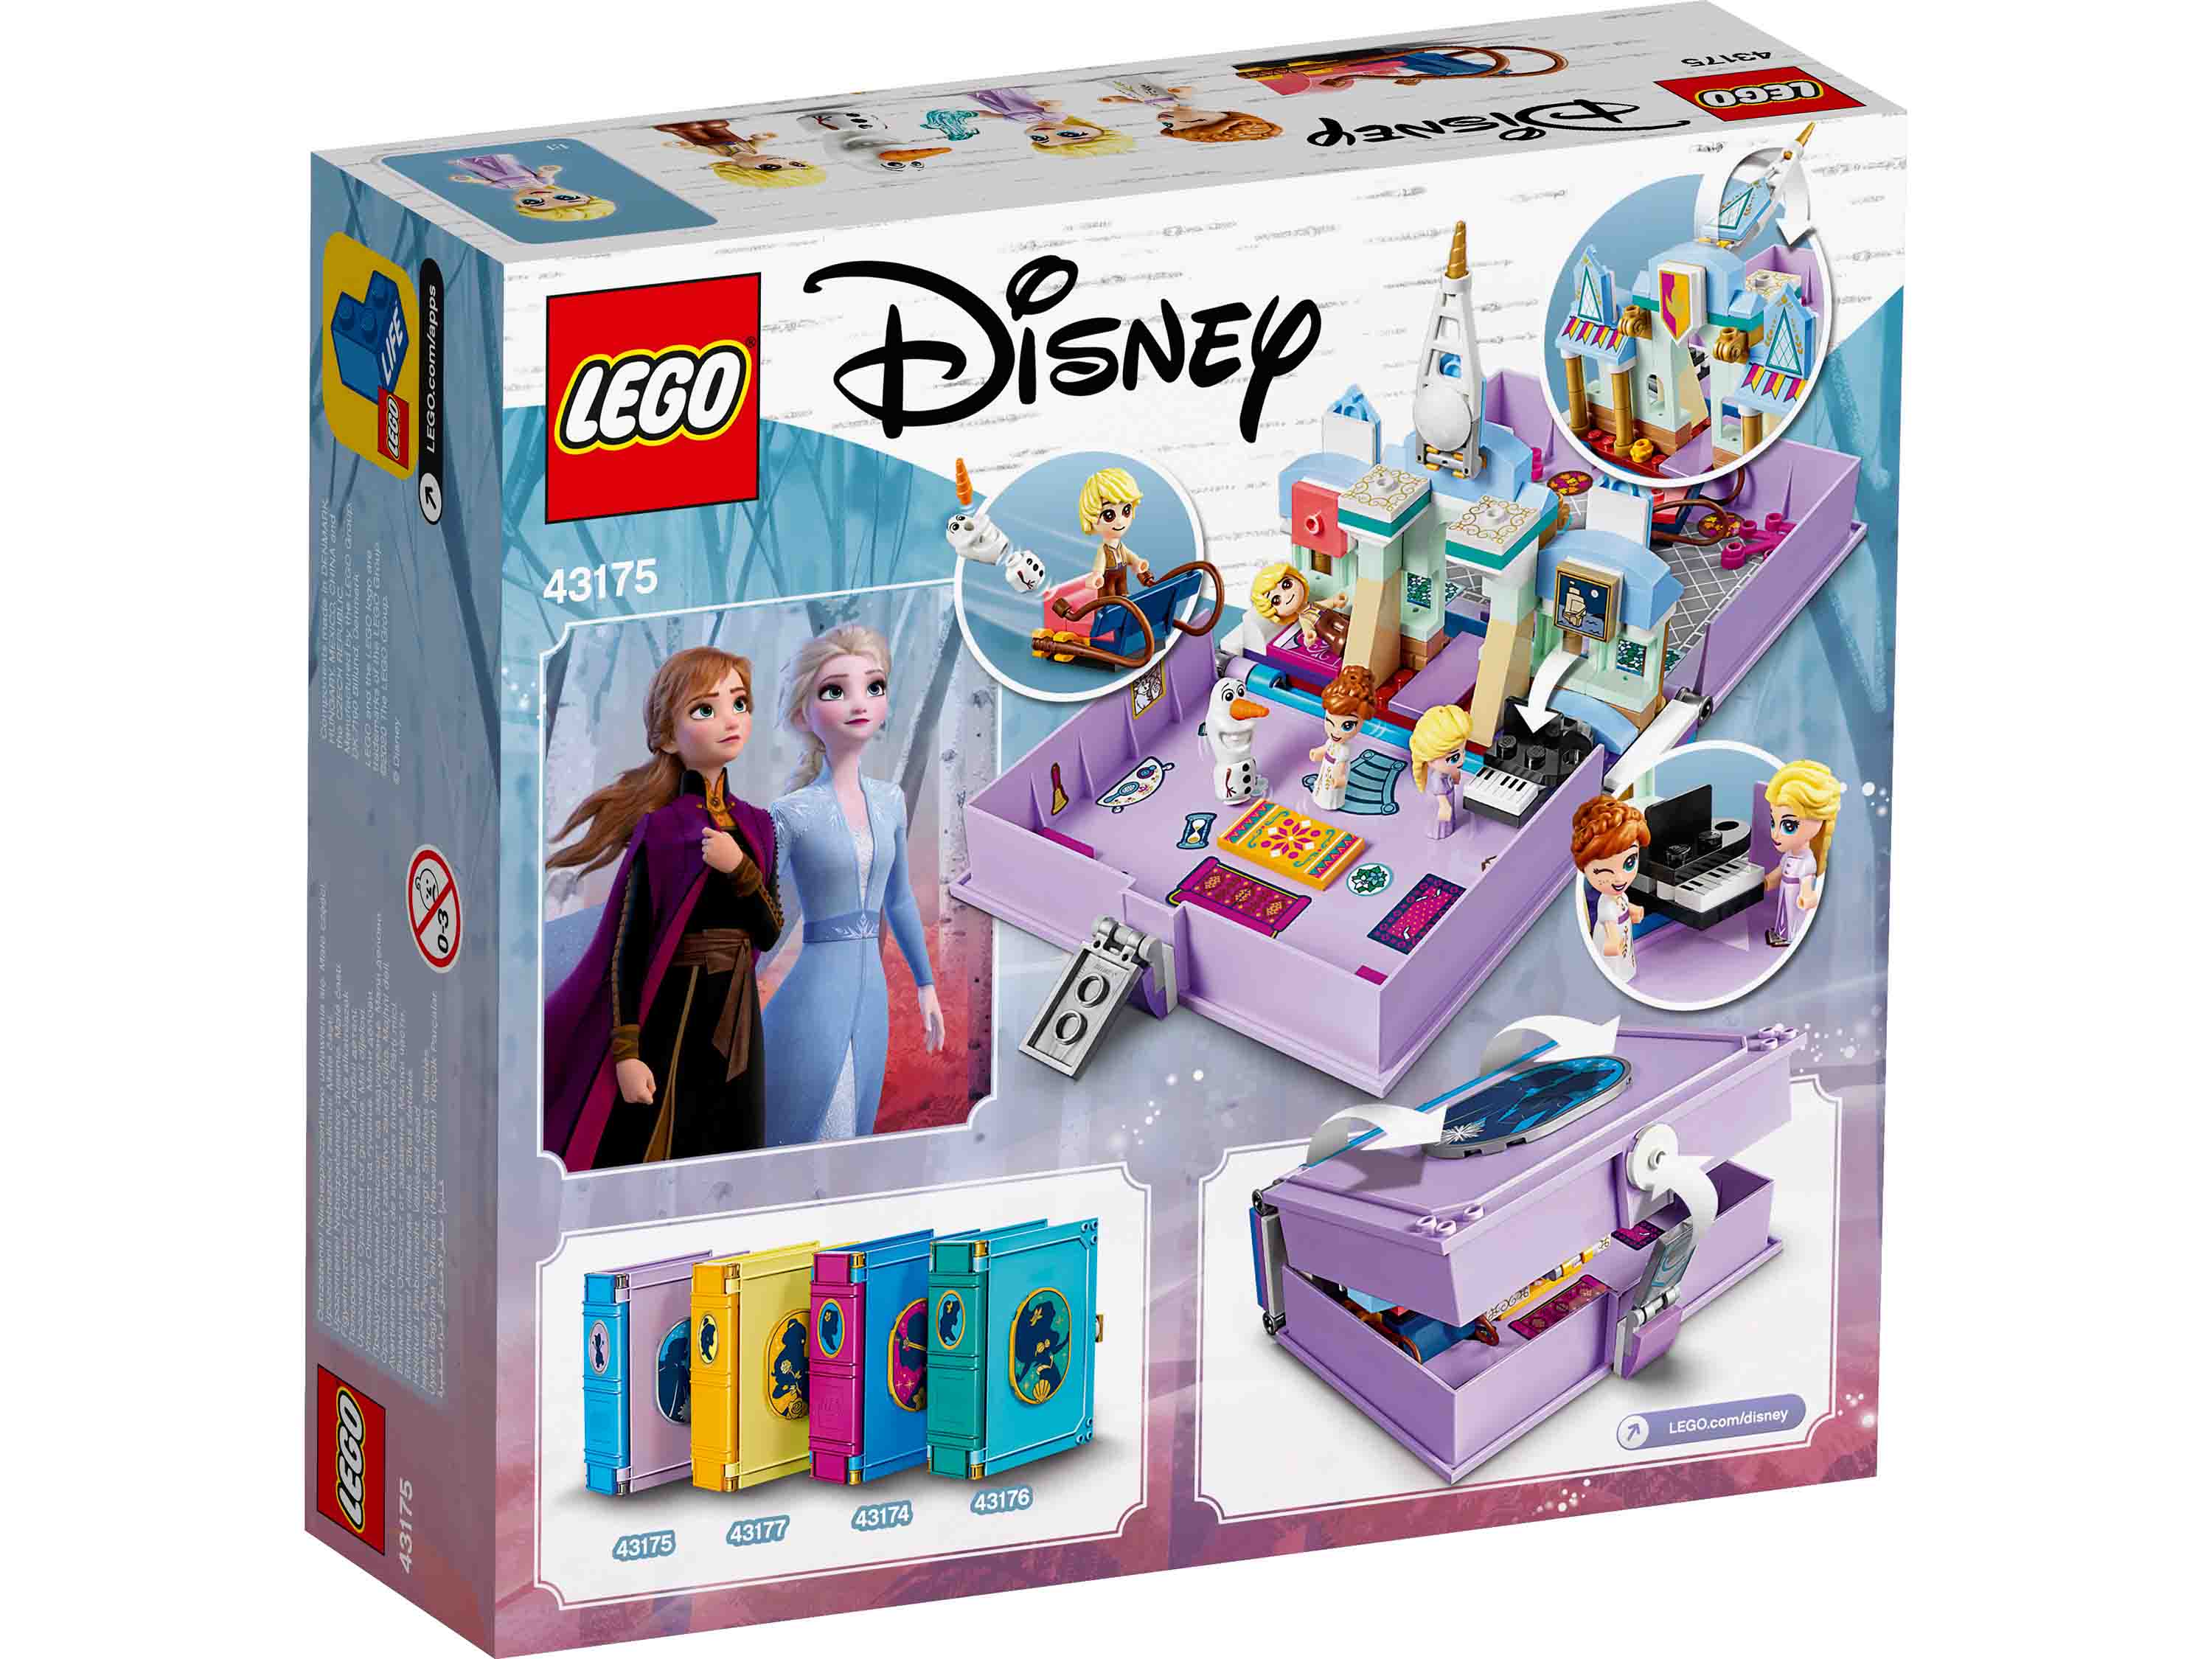 Конструктор Lego Disney Princess - Книга сказочных приключений Анны и Эльзы  